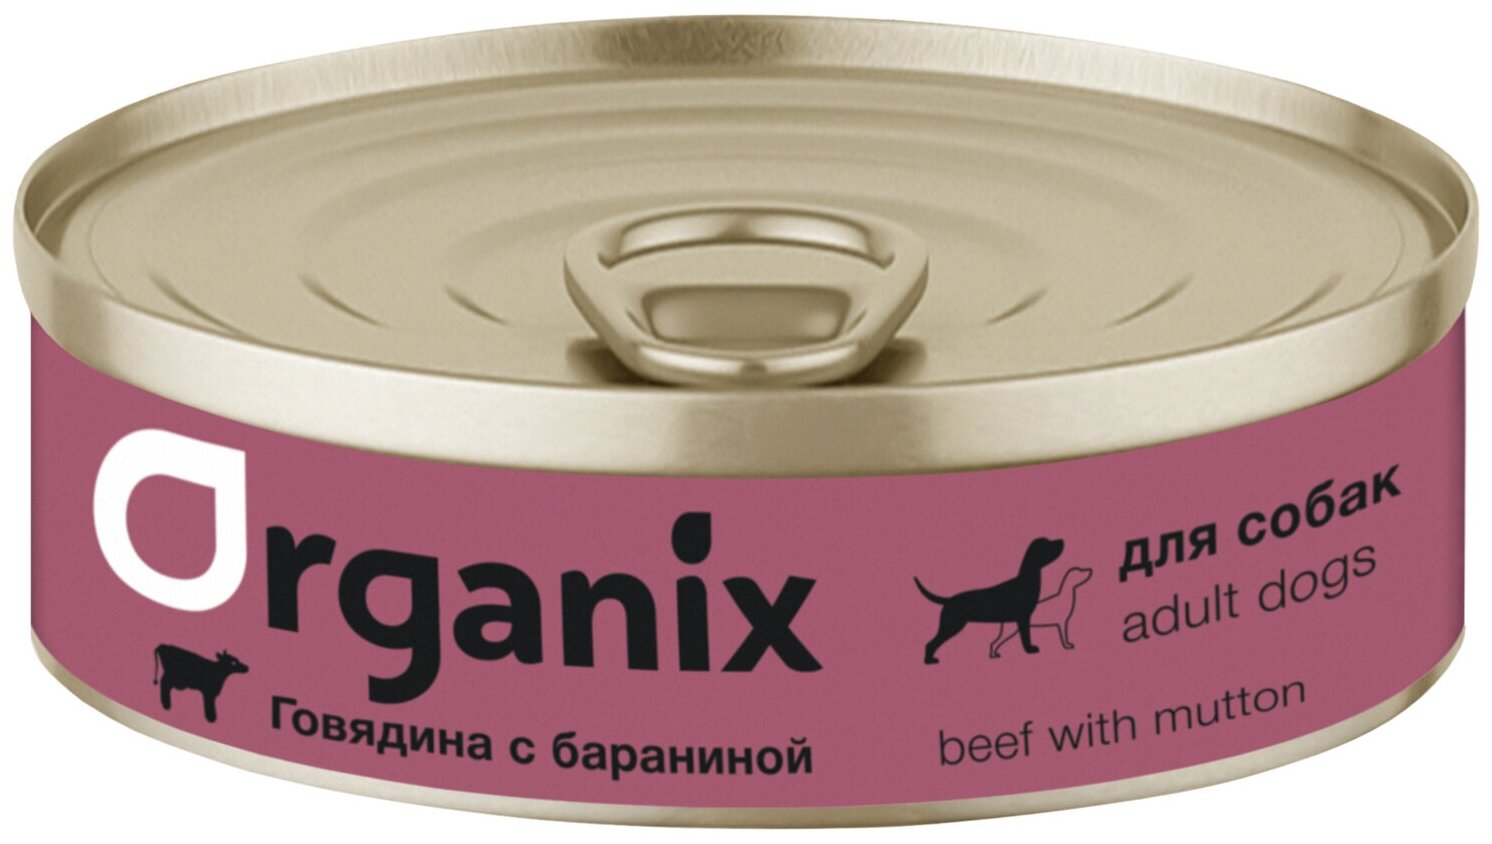 Корм Organix (консерв.) для собак, говядина с бараниной, 100 г x 45 шт